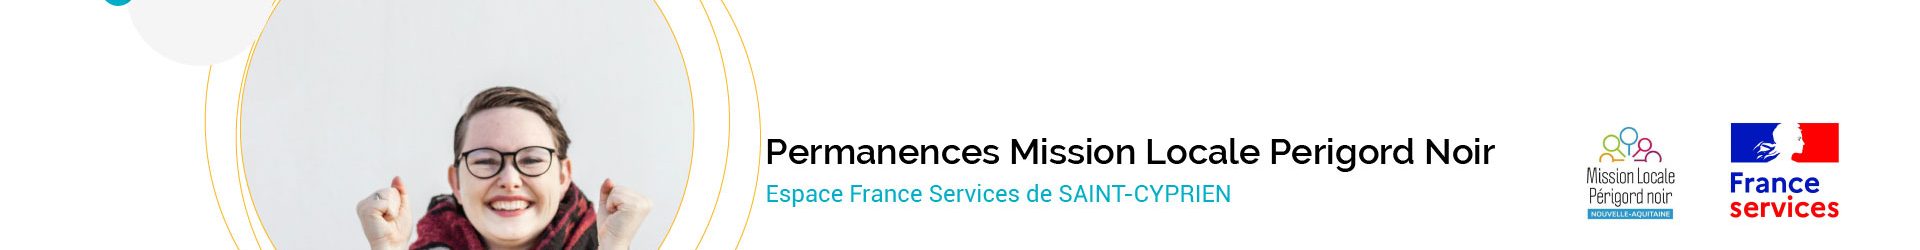 Permanences de la Mission Locale du Perigord Noir à l’Espace France Services de Saint-Cyprien